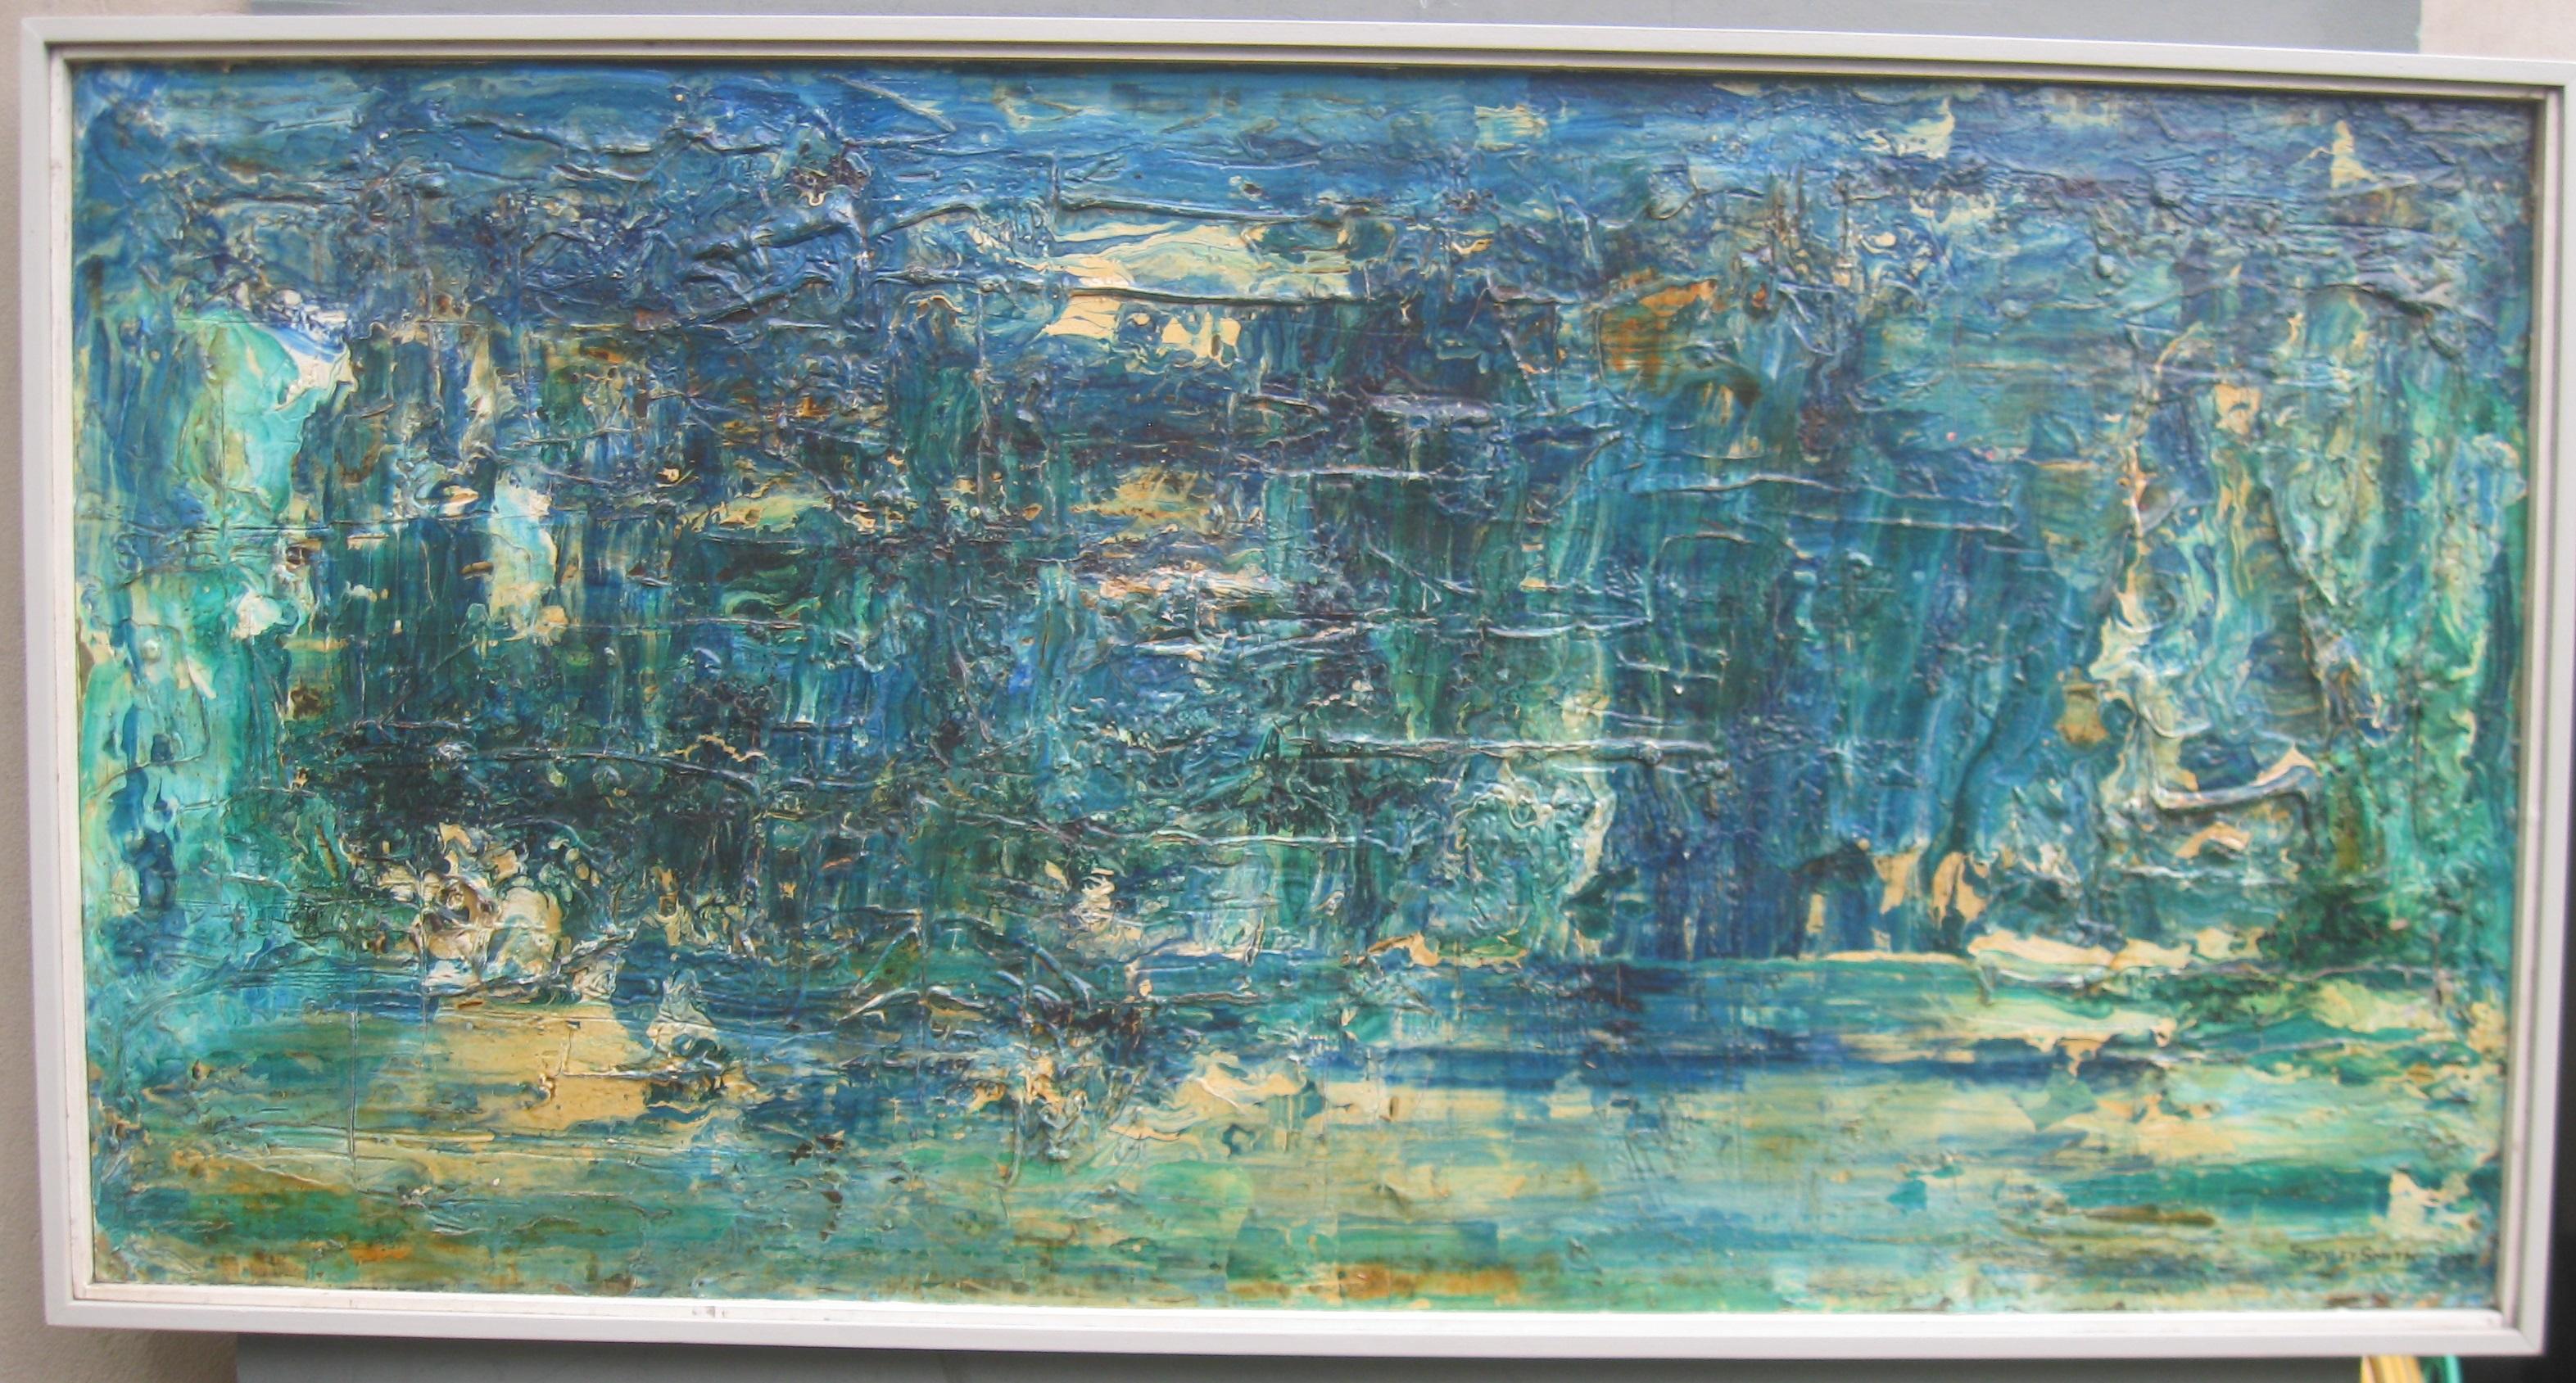 Großes abstrakt-expressionistisches Ölgemälde des 20. Jahrhunderts, um 1975 – Painting von Stanley Smith